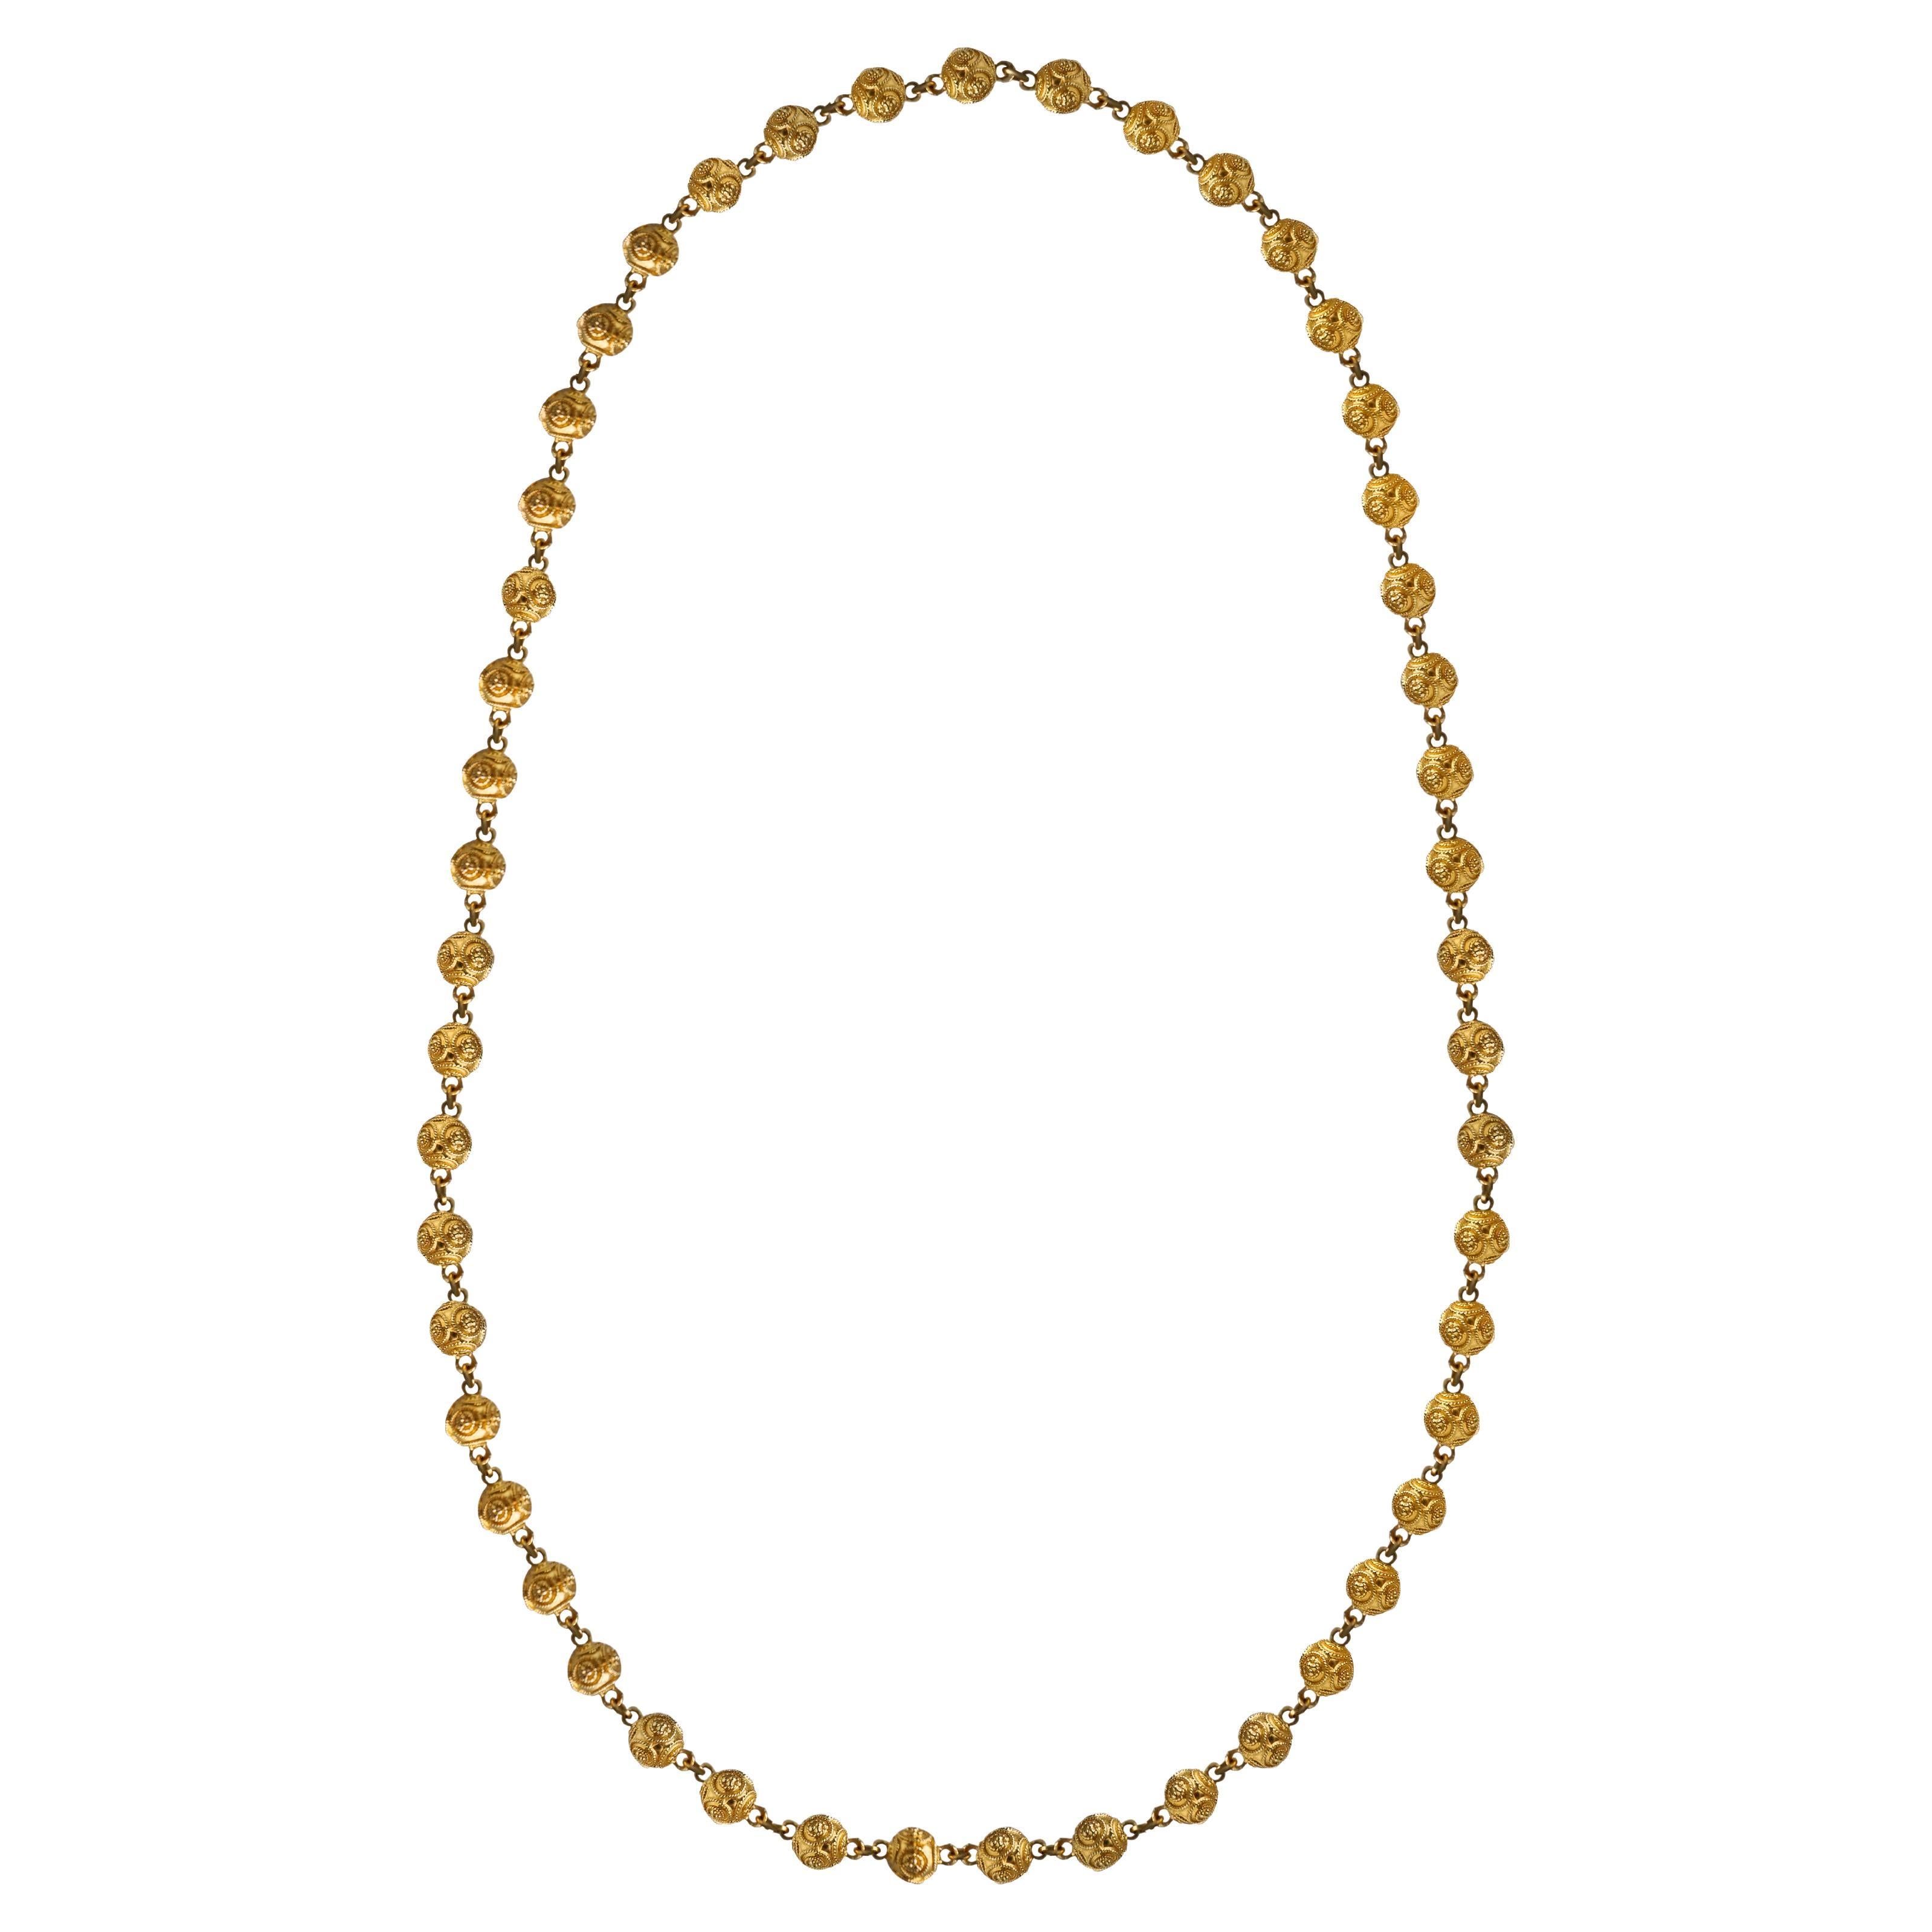 18K Solid Gold Ball Etruscan Revival Halskette. Einzigartiges Design verbindet 51 Gelbgoldkugeln in einem ovalen Federring ohne offene Schließe.
Abmessungen der Goldkugel: 7,48 mm lang x 9 mm breit.
Abmessungen der Halskette: 32 Zoll/81,5